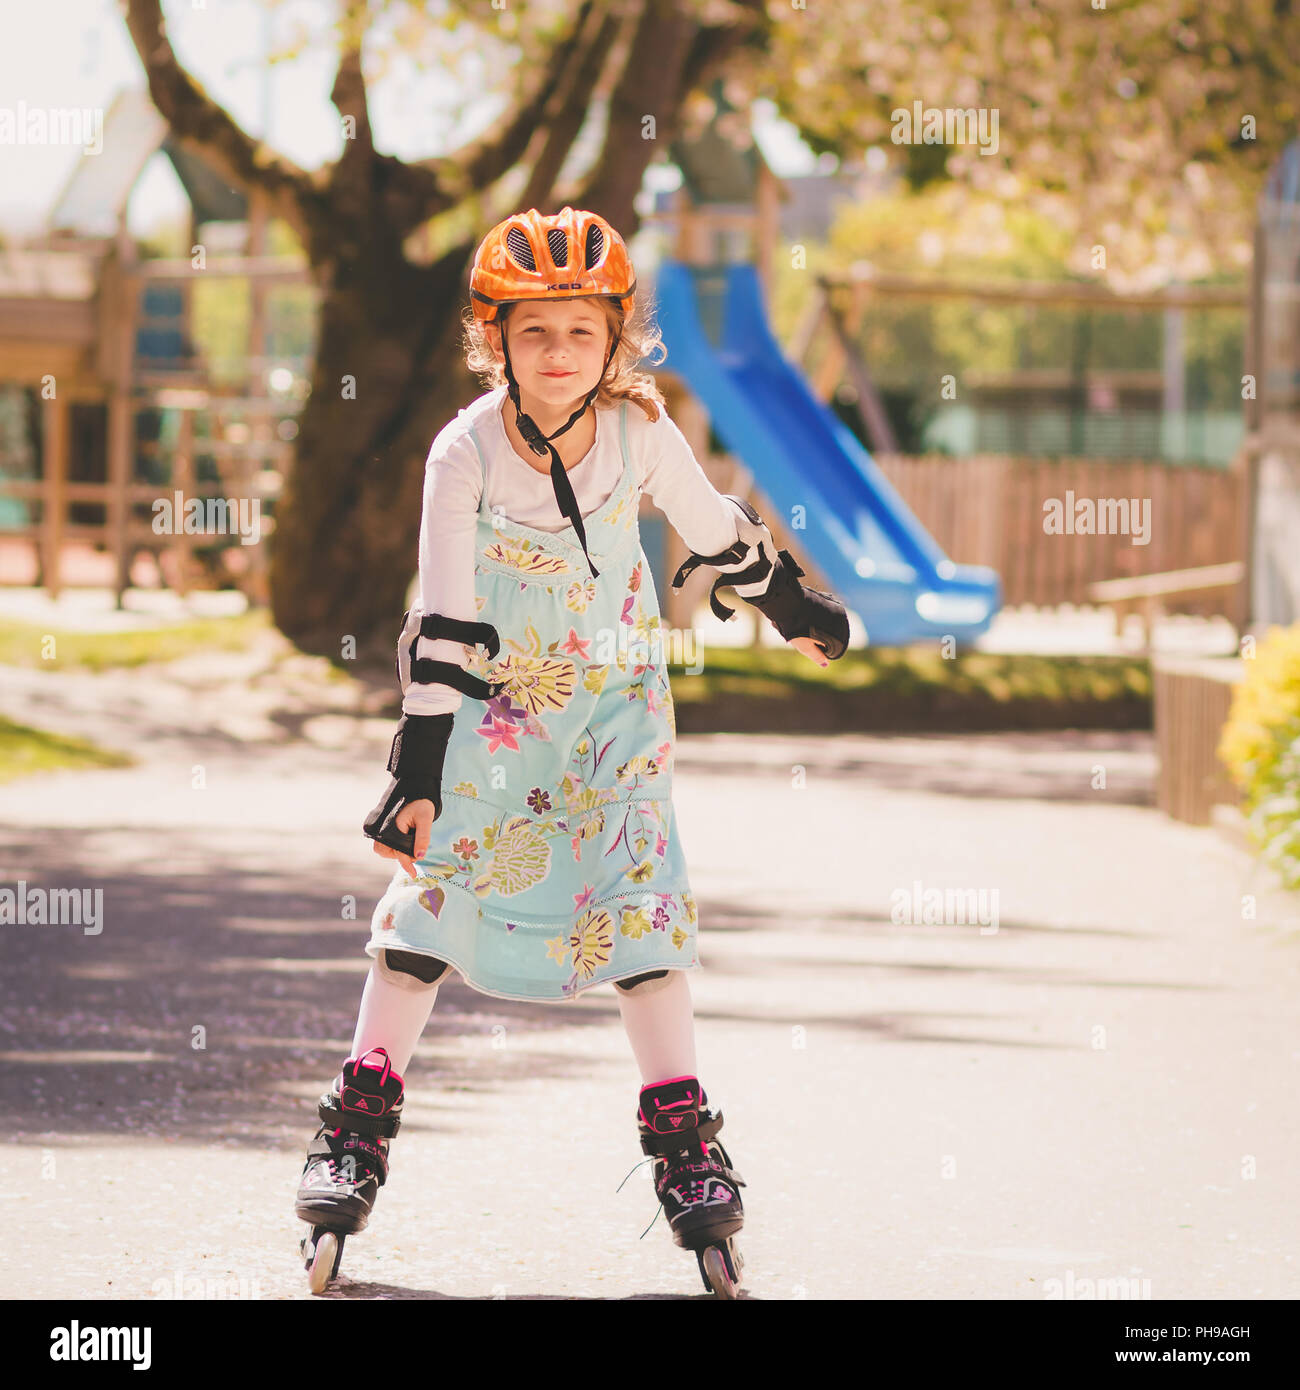 Jeune fille avec des patins de patinage de l'apprentissage Banque D'Images